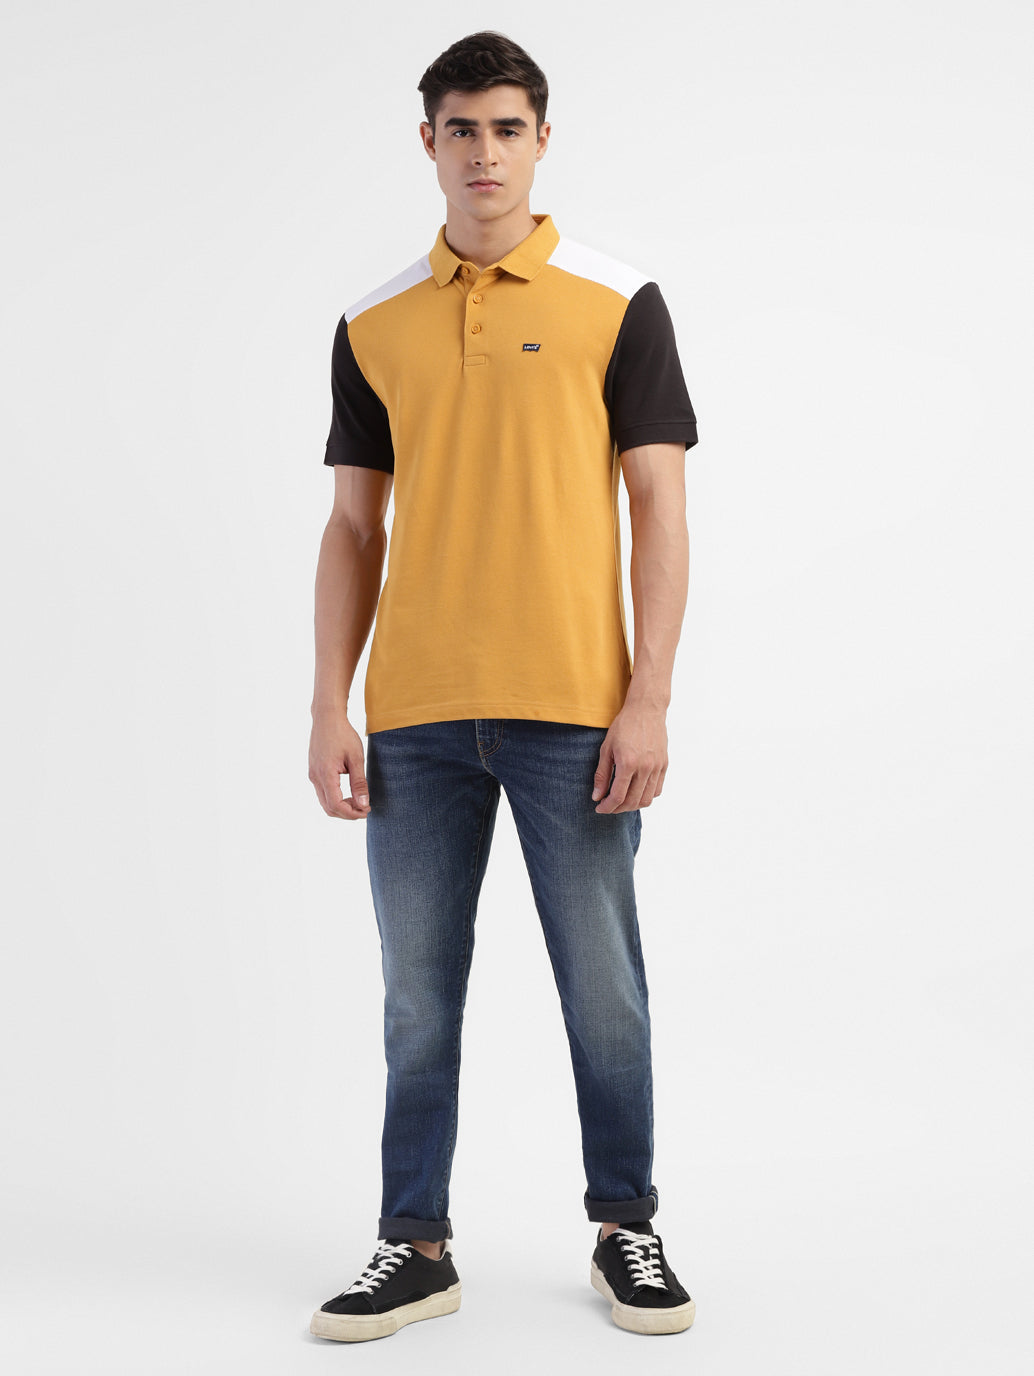 Men's Colorblock Slim Fit T-shirt Yellow